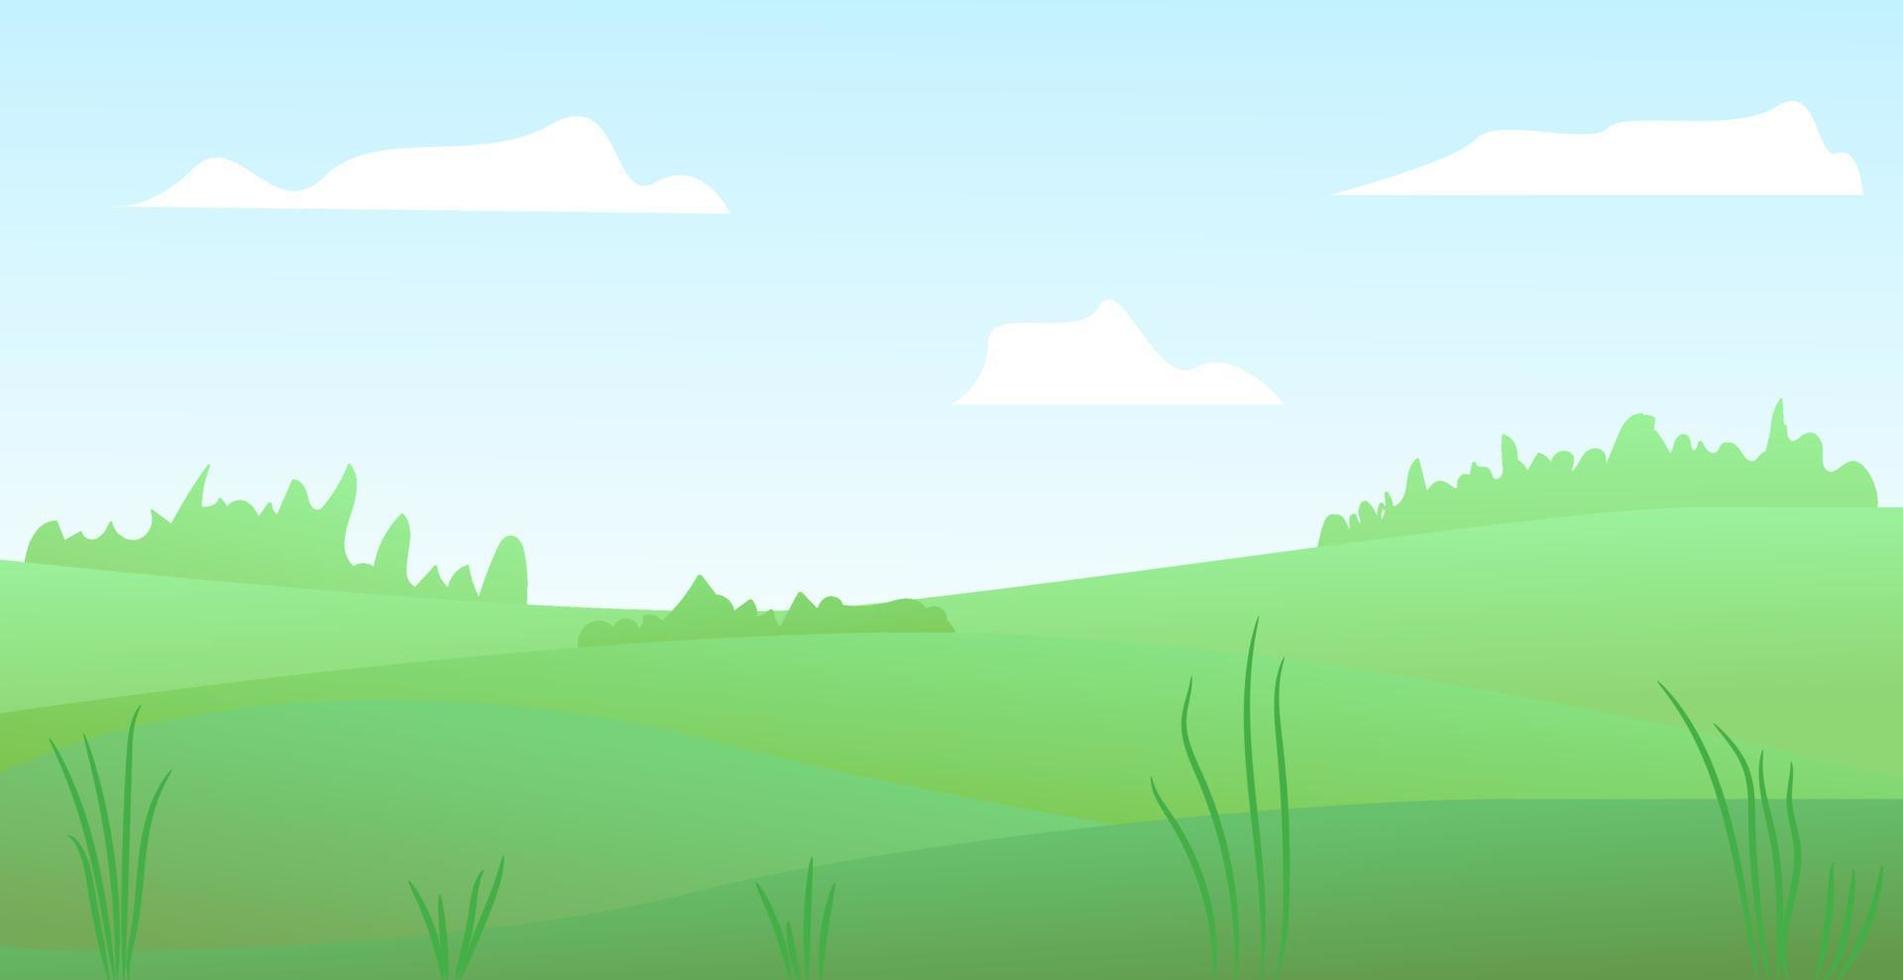 illustration vectorielle de beaux paysages de champs d'été. jolies collines vertes, ciel bleu de couleur vive, nuages. fond de nature dans un style de dessin animé plat. vecteur